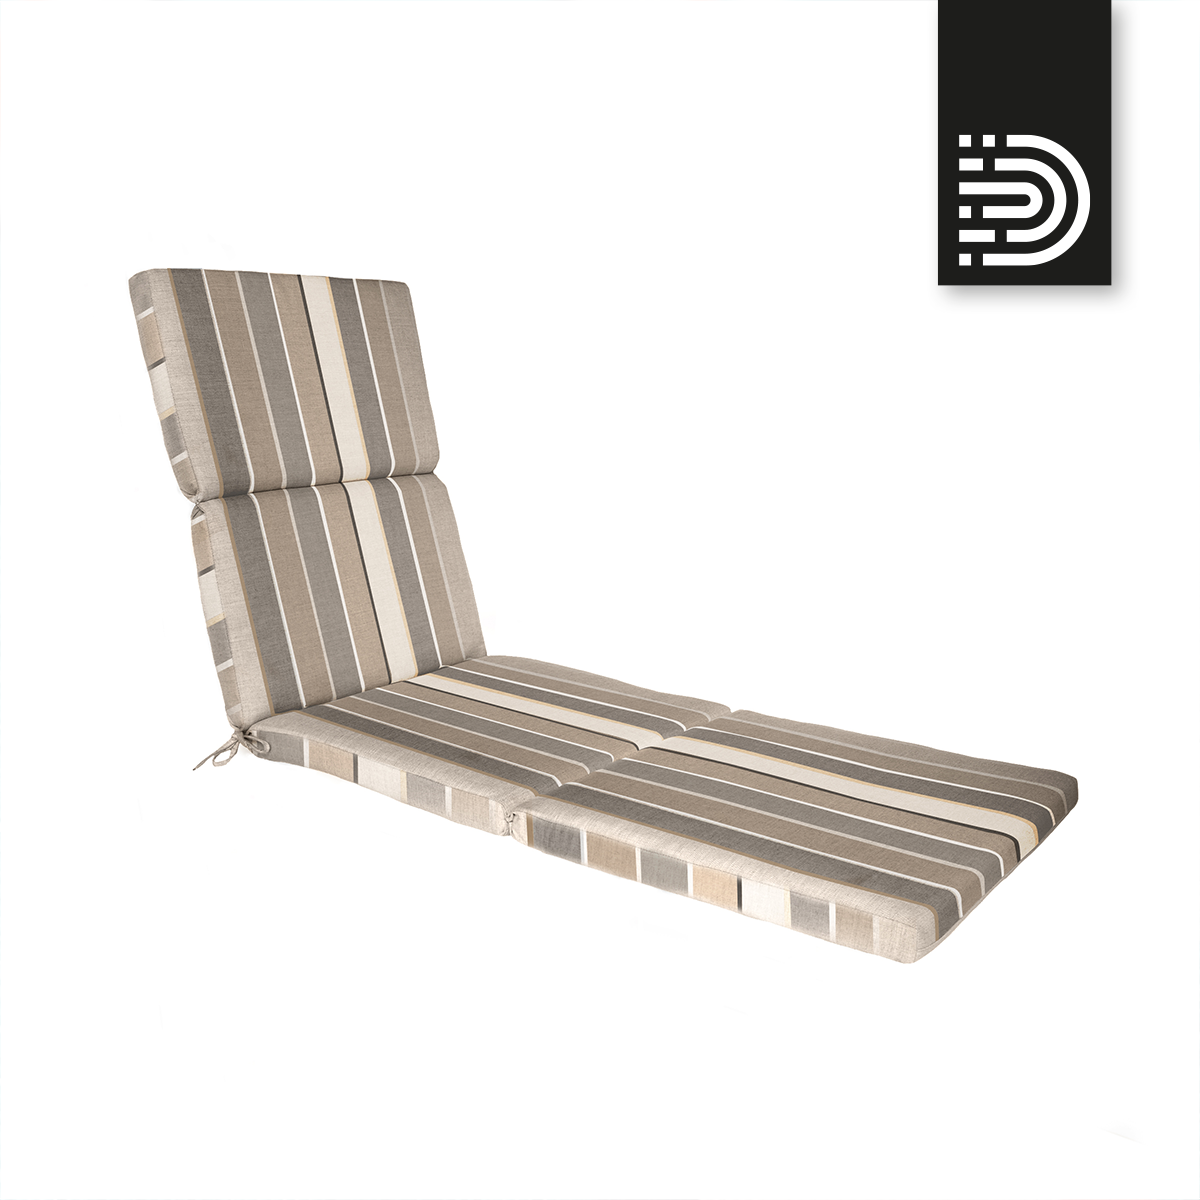 LP01 Chaise Lounge Cushion Pad - Milano Char 56079-0000